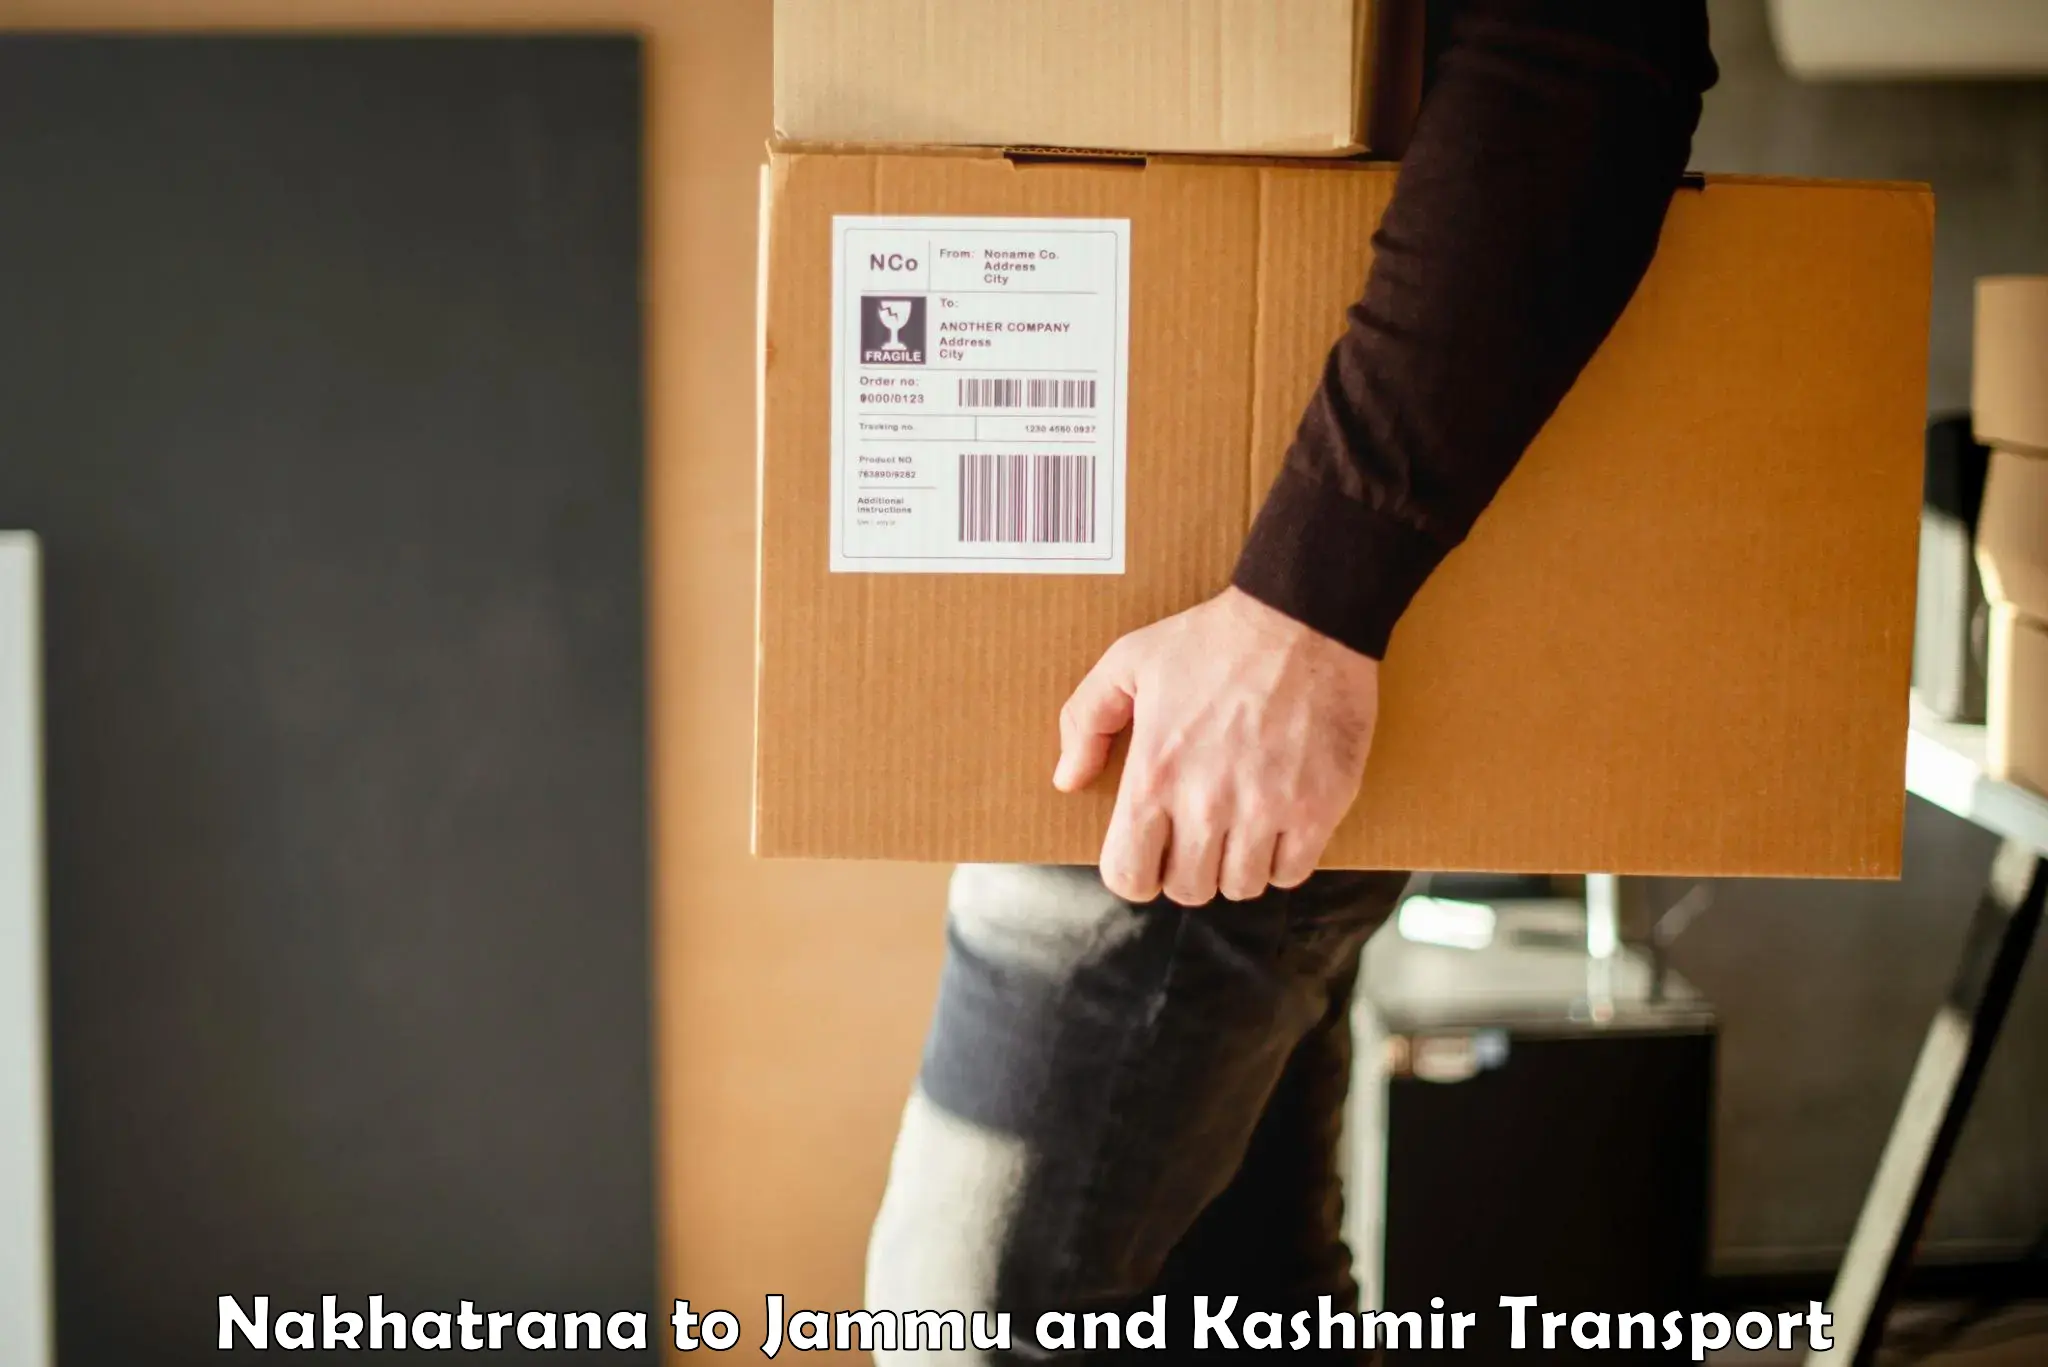 Truck transport companies in India Nakhatrana to Leh